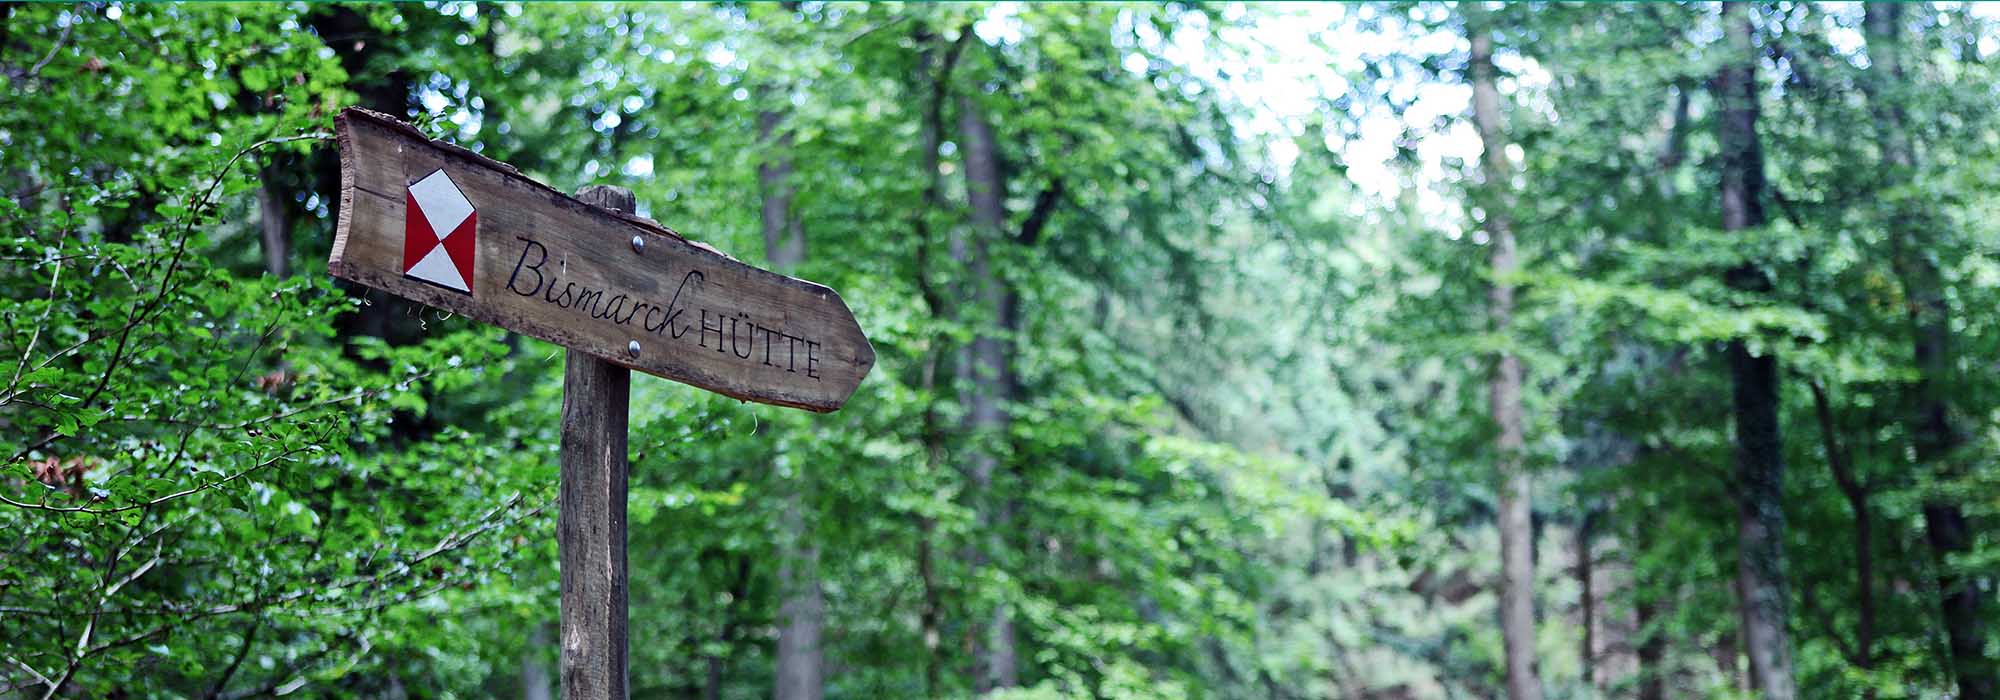 Waldweg mit Schild, welches zu der Bismarck Hütte führt